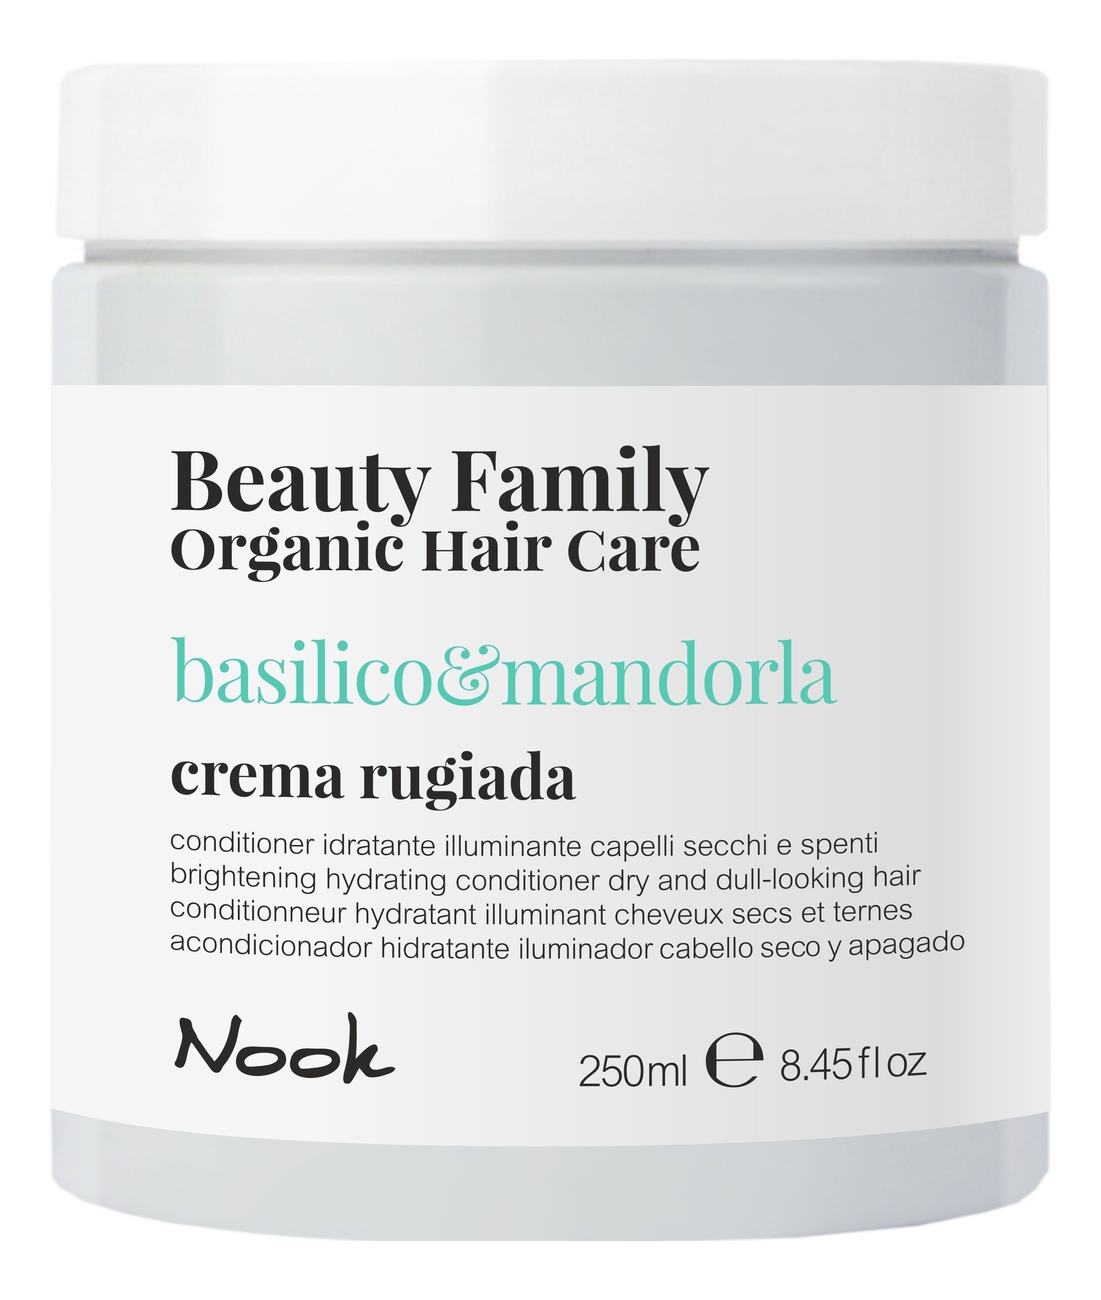 Крем-кондиционер для сухих и тусклых волос Beauty Family Crema Rugiada Basilico & Mandorla: Крем-кондиционер 250мл крем кондиционер для сухих и тусклых волос nook basilico